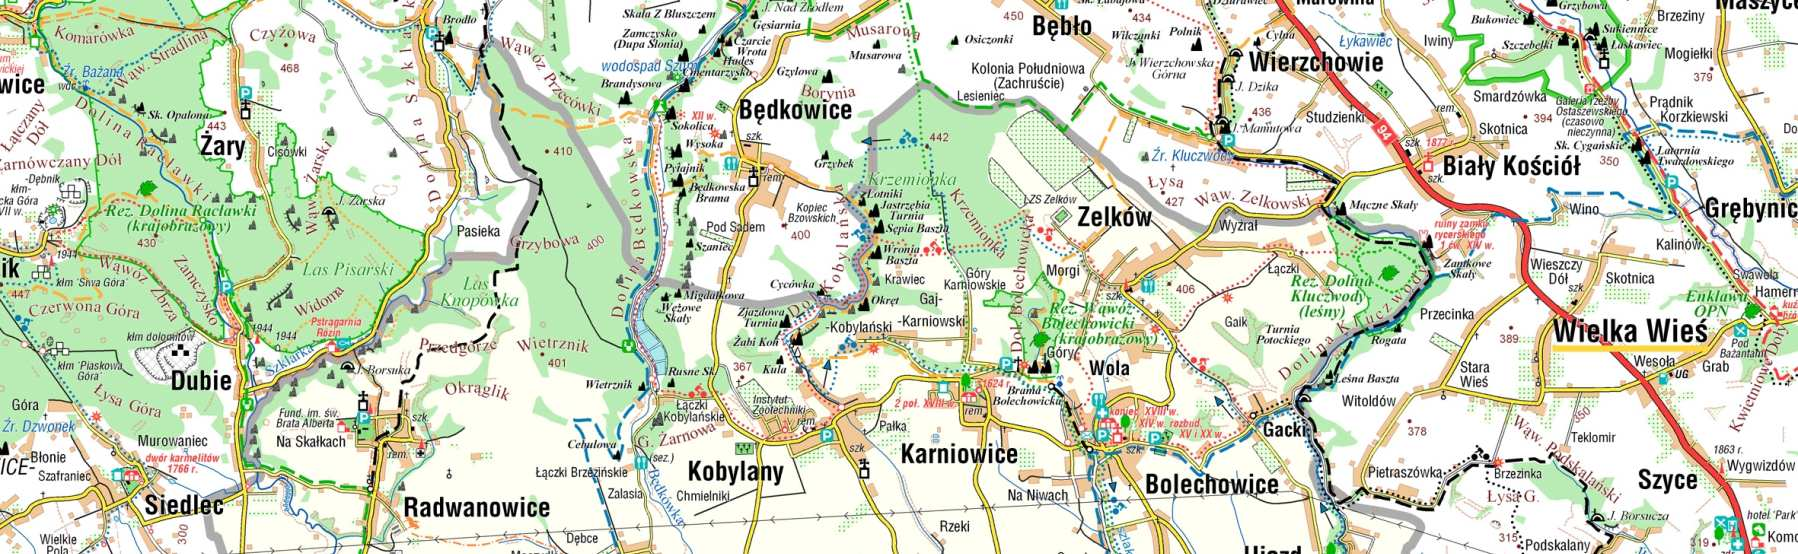 Mapa gminy Zabierzów Oprac. Firma Compass Jedną z miejscowości jest sołectwo Kleszczów, połoŝone w odległości ok.